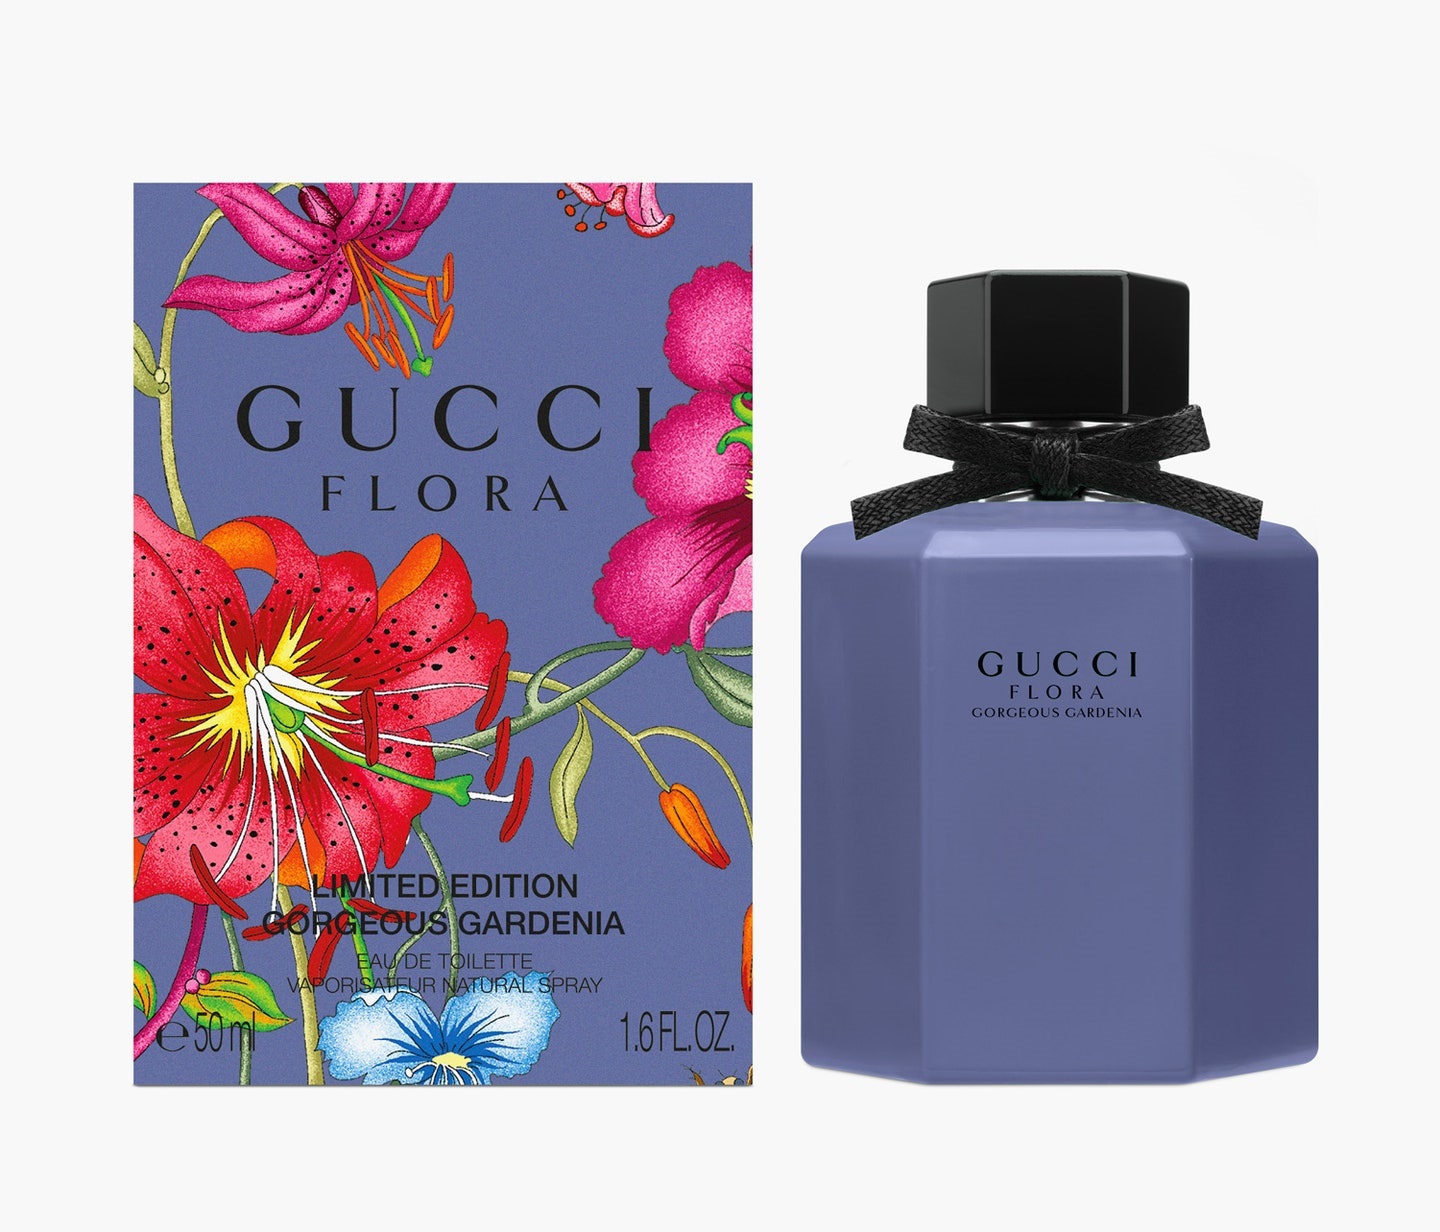 Gucci Flora Gorgeous Gardenia 2020 